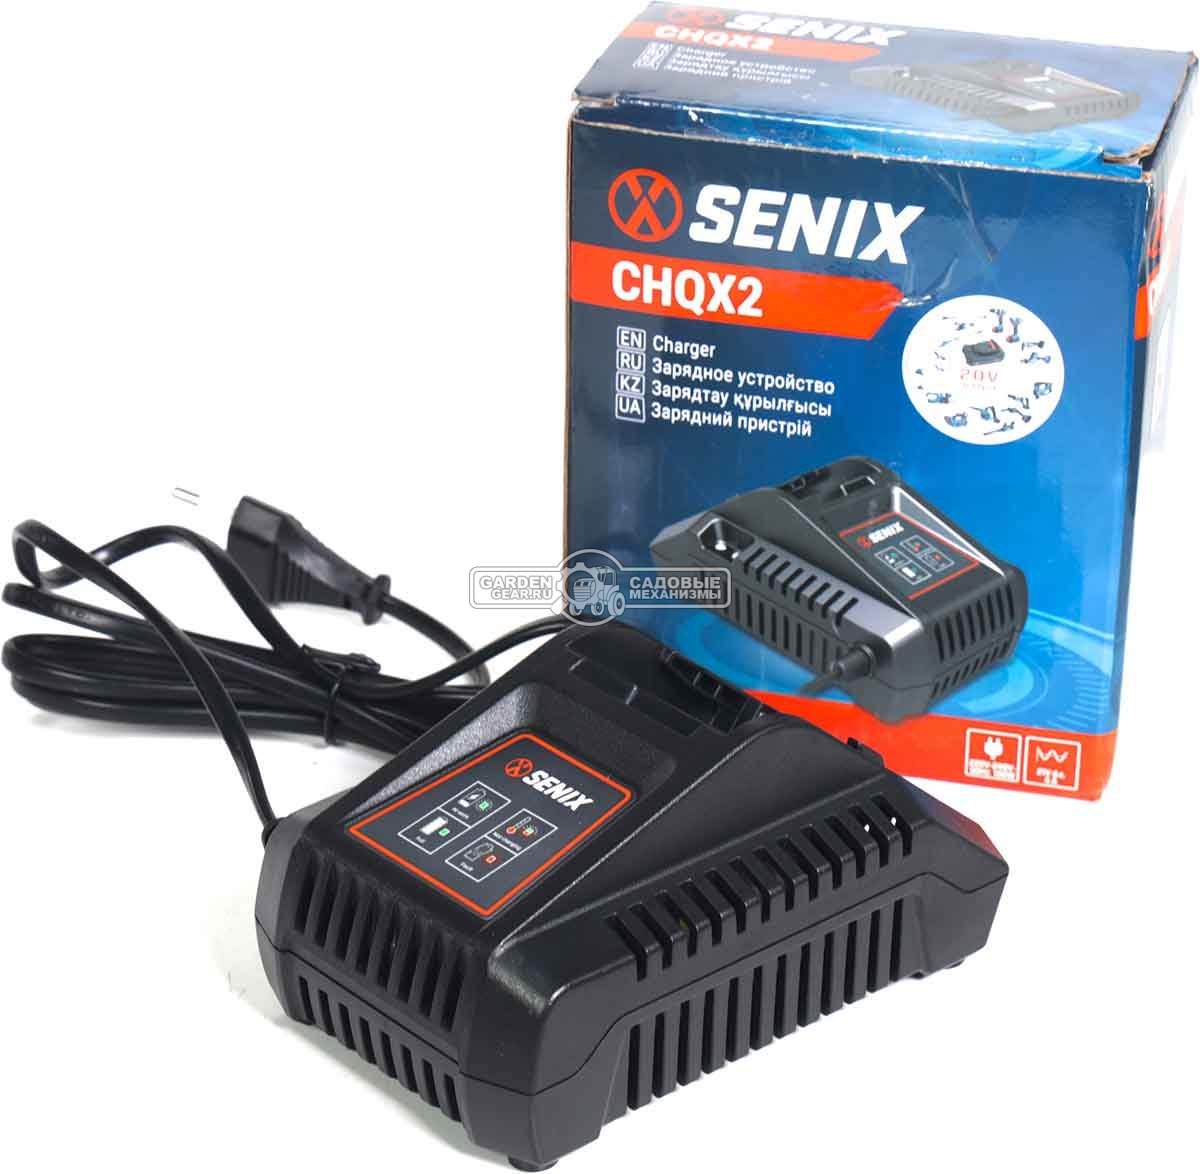 Зарядное устройство Senix CHQX2 быстрой зарядки для аккумуляторов 18В (4А)